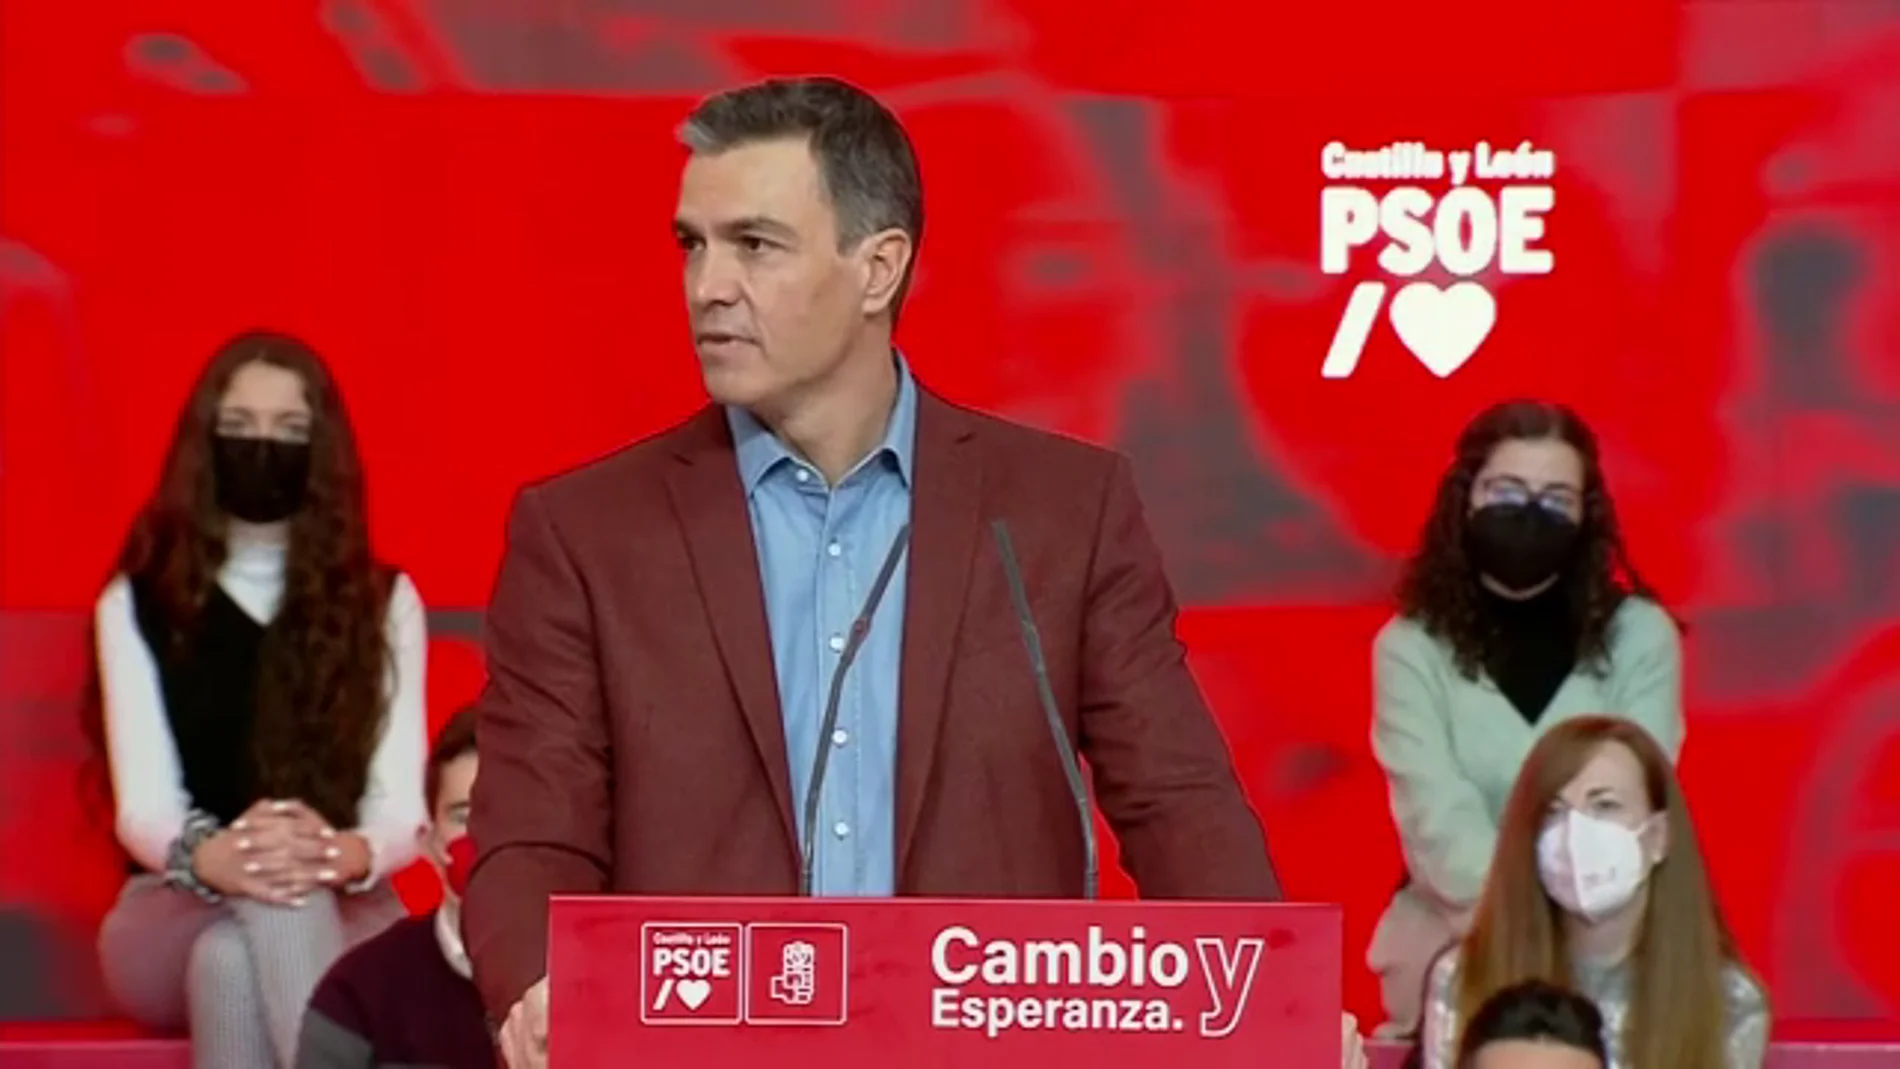 Pedro Sánchez insiste en que el PP apoye la reforma laboral: "Abandonen por una vez su posición destructiva"